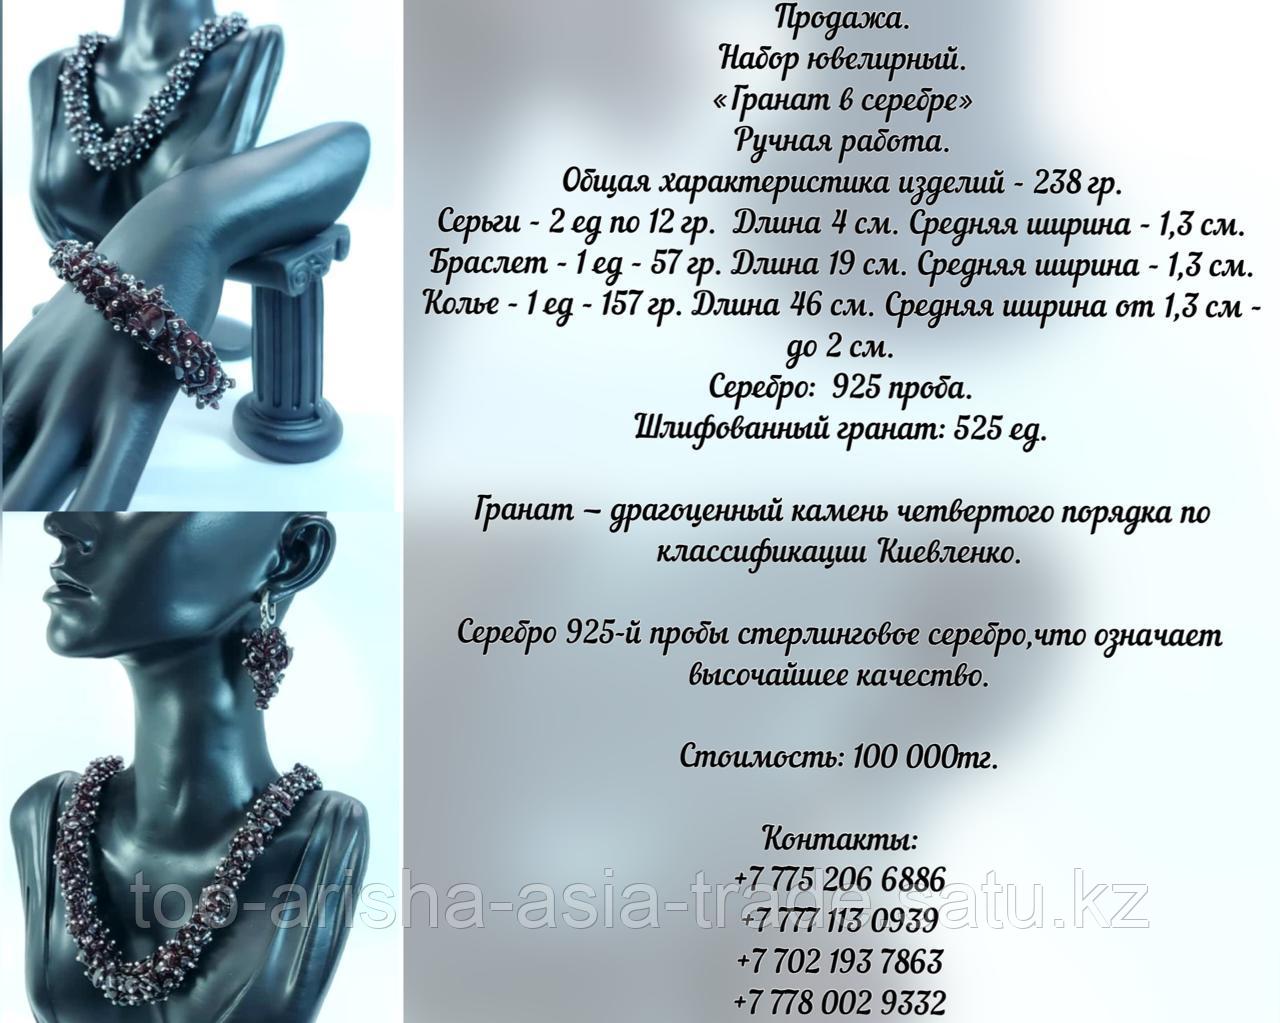 Набор ювелирный "Гранат в серебре" Казахстан